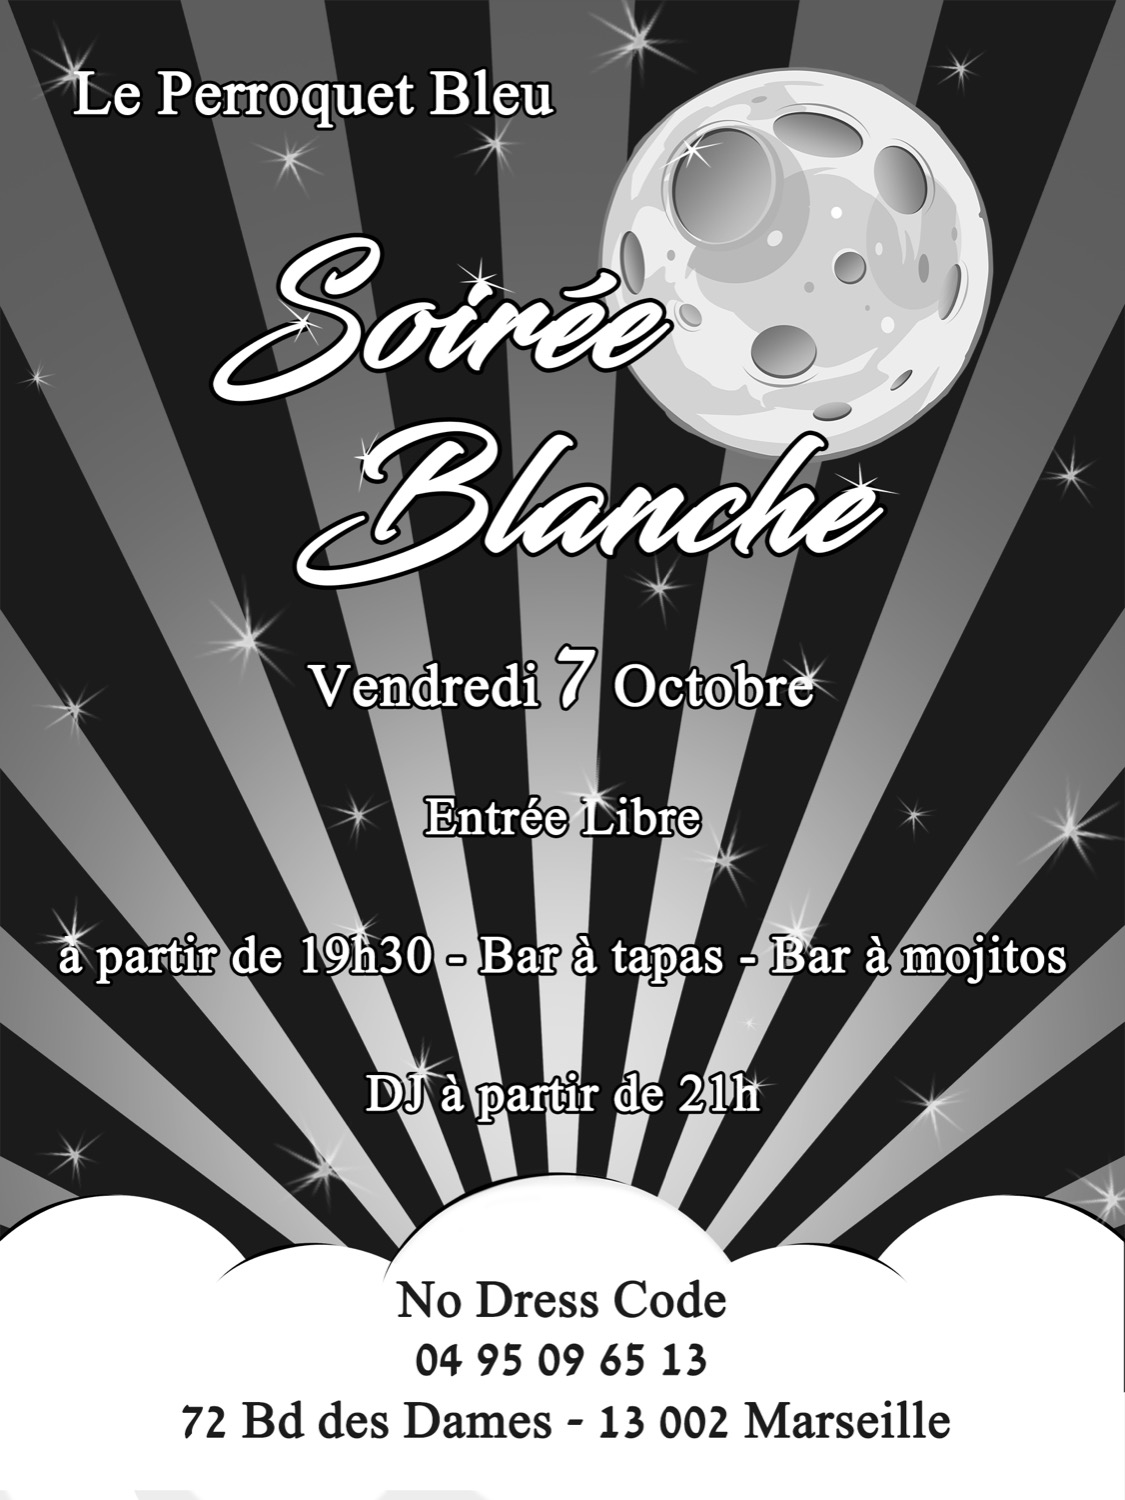 Soiree-blanche-Perroquet-Bleu-Octobre-2016